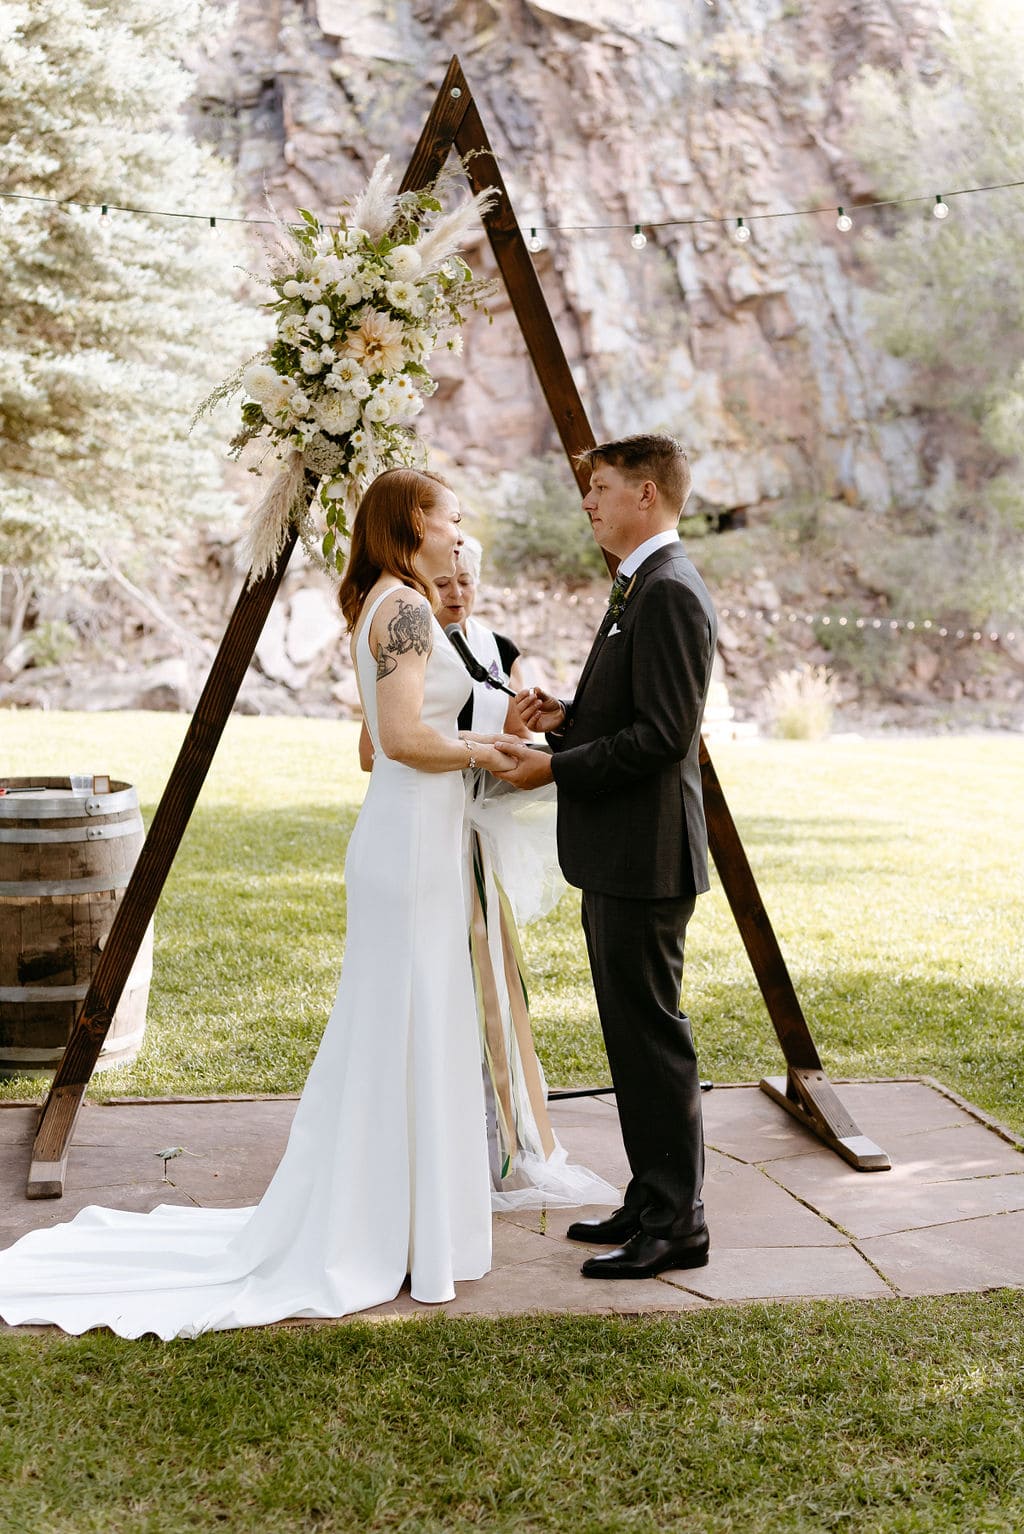 Romantic River Bend Wedding Ceremony in Colorado